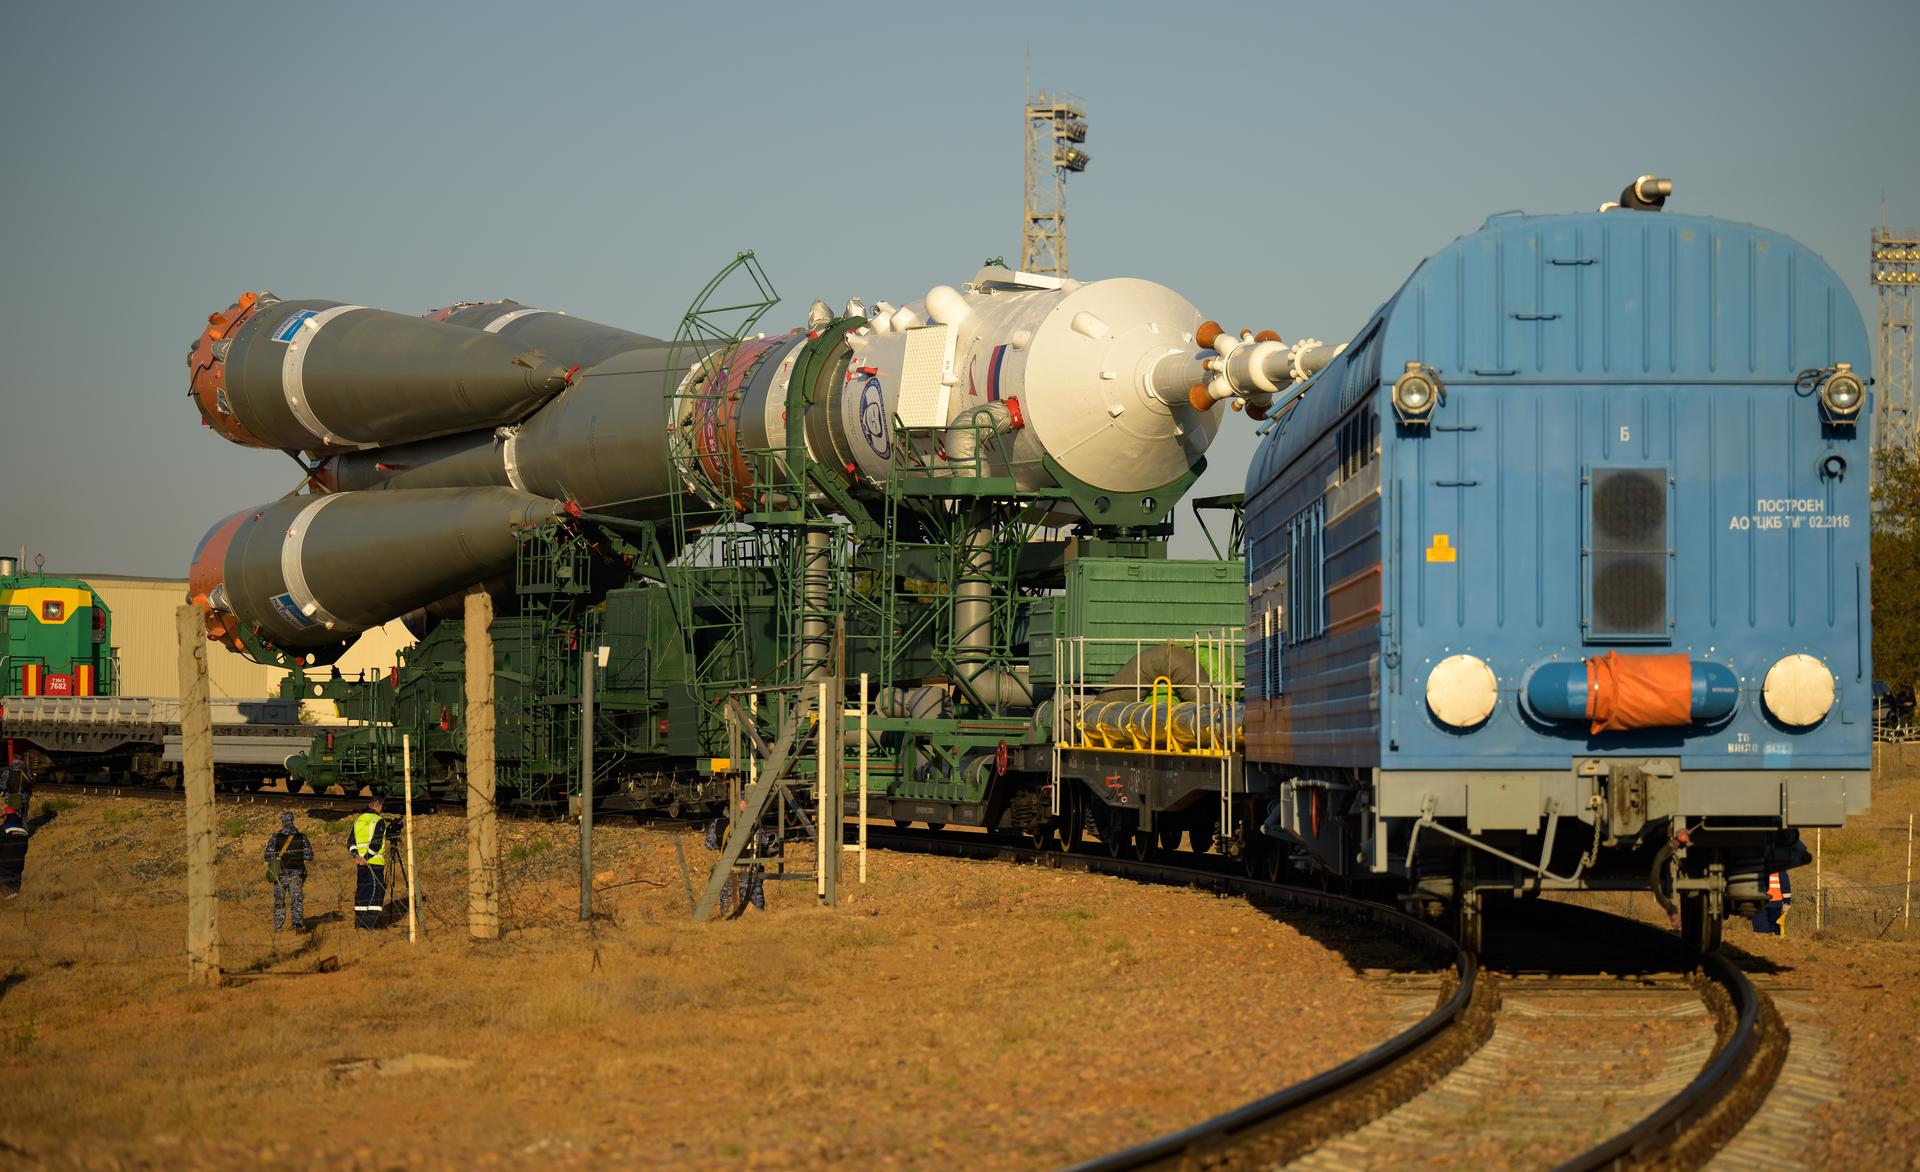 Bộ ảnh quyền lực: Nga nâng tên lửa Soyuz lên bệ, sắp có chuyến bay lịch sử - Ảnh 3.